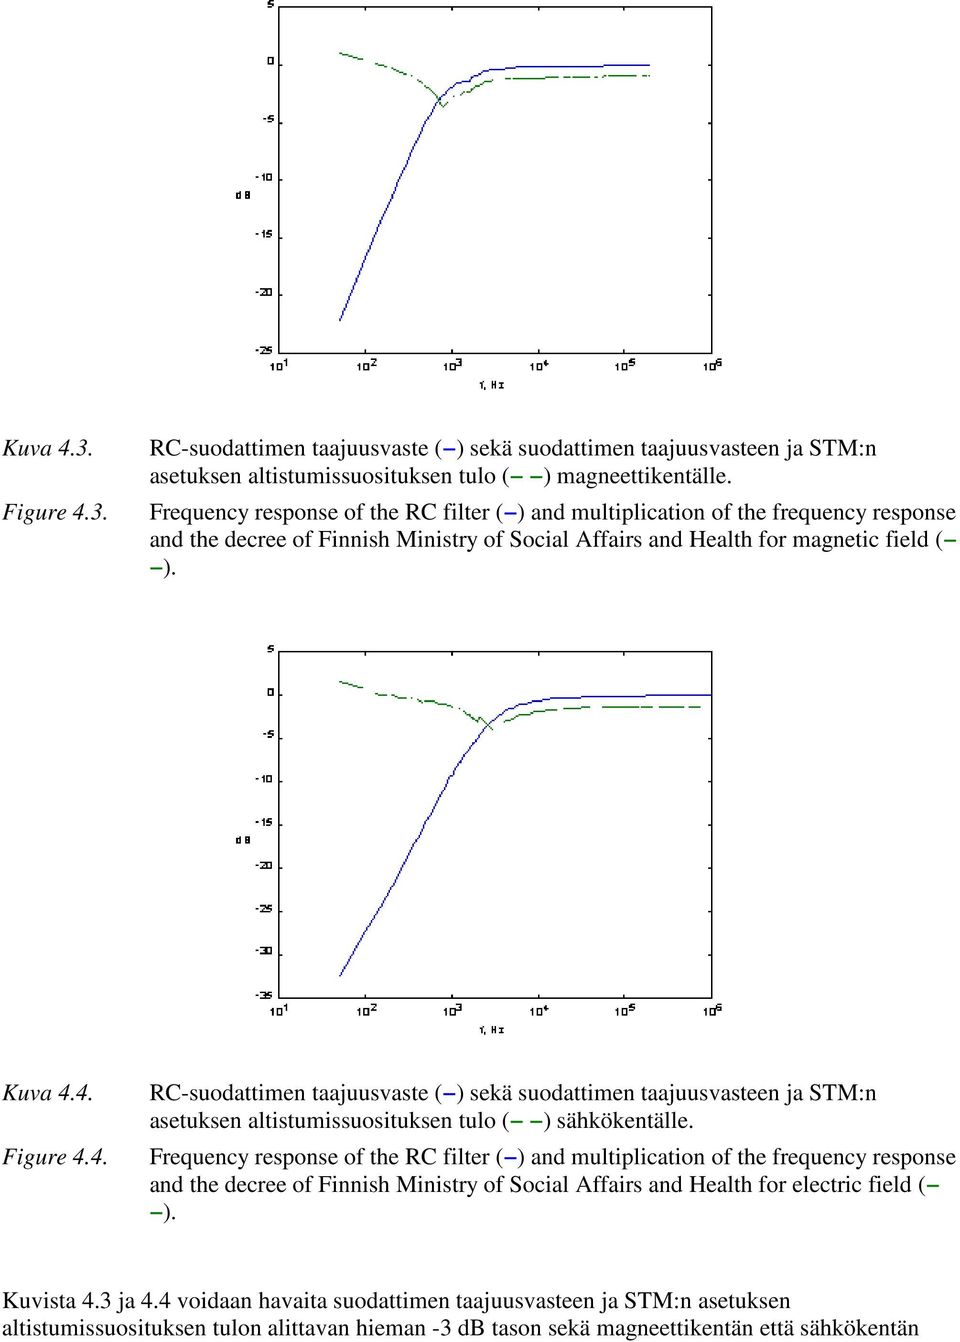 4. Figure 4.4. RC-suodattimen taajuusvaste ( ) sekä suodattimen taajuusvasteen ja STM:n asetuksen altistumissuosituksen tulo ( ) sähkökentälle.